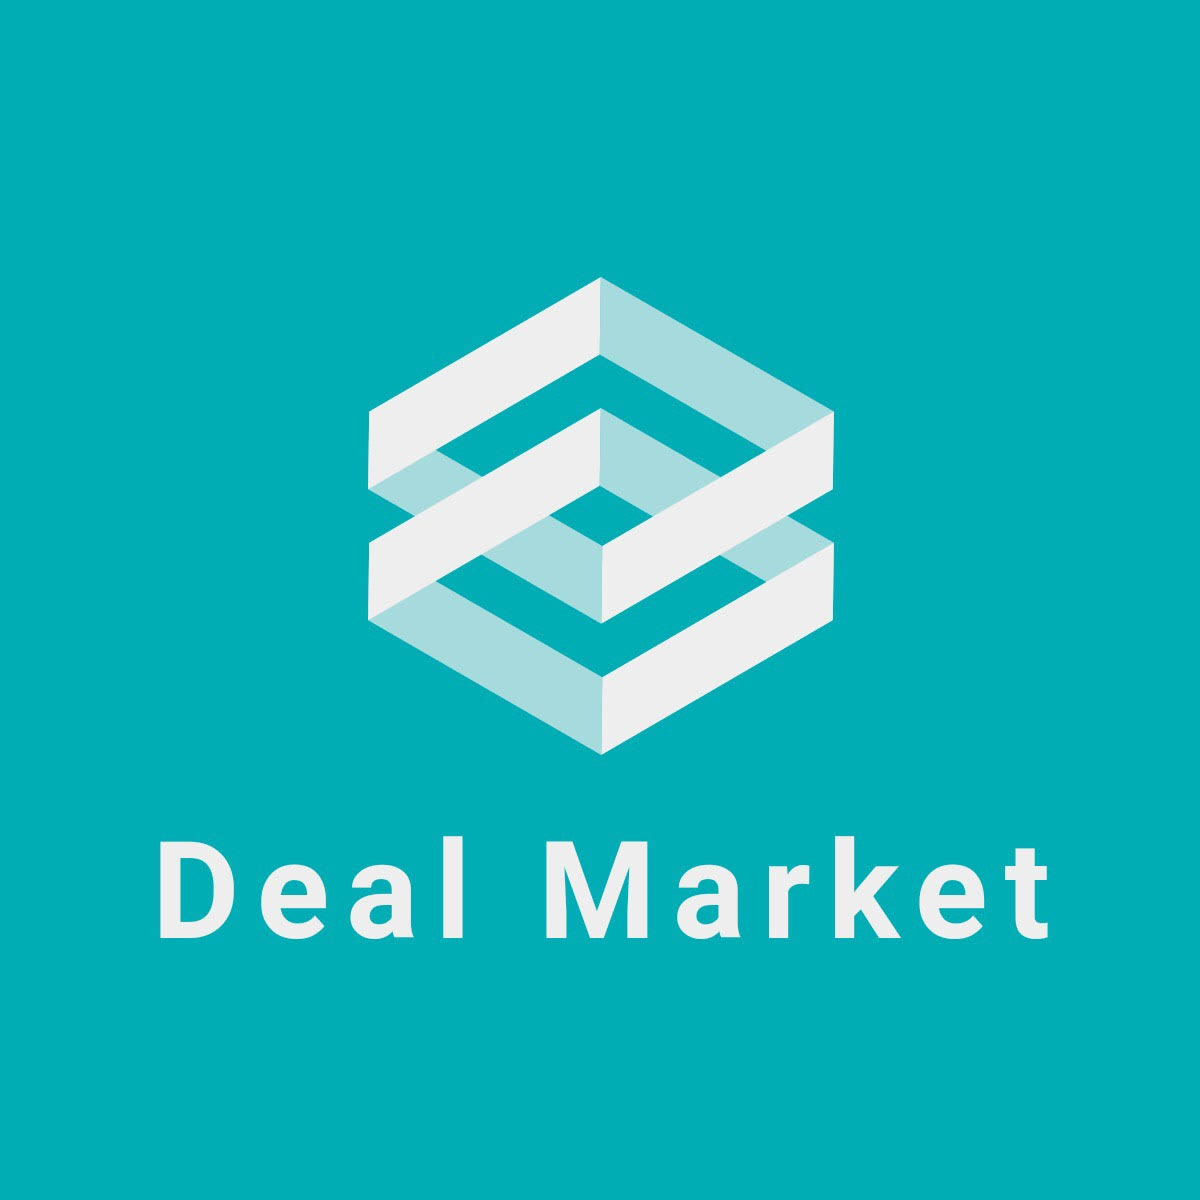 Deal Market